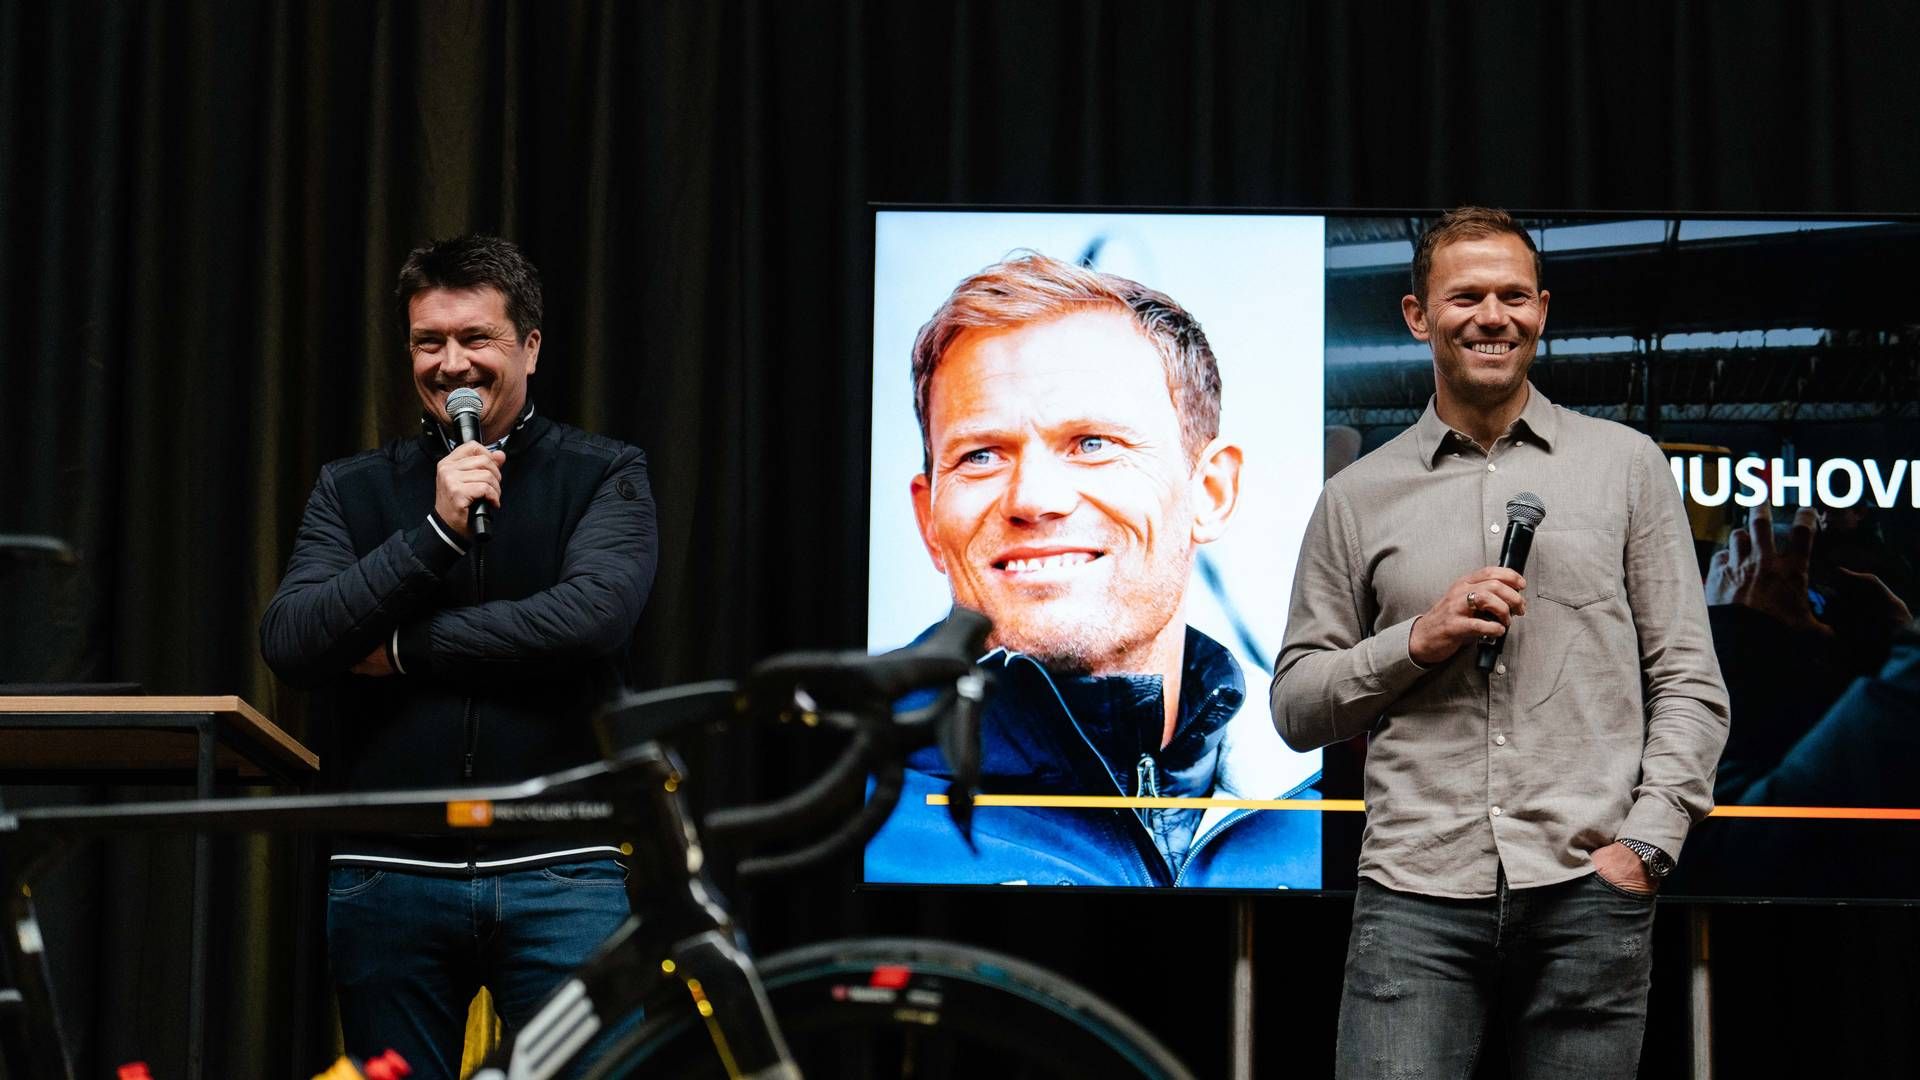 SAMARBEID: Administrerende direktør Ole Robert Reitan i Reitan Retail (til venstre) og syklist Thor Hushovd sammen under sykkelrittet Flandern rundt. Nå får begge nye roller i tilknytning til Reitan Retails sykkellag. | Foto: Uno-X